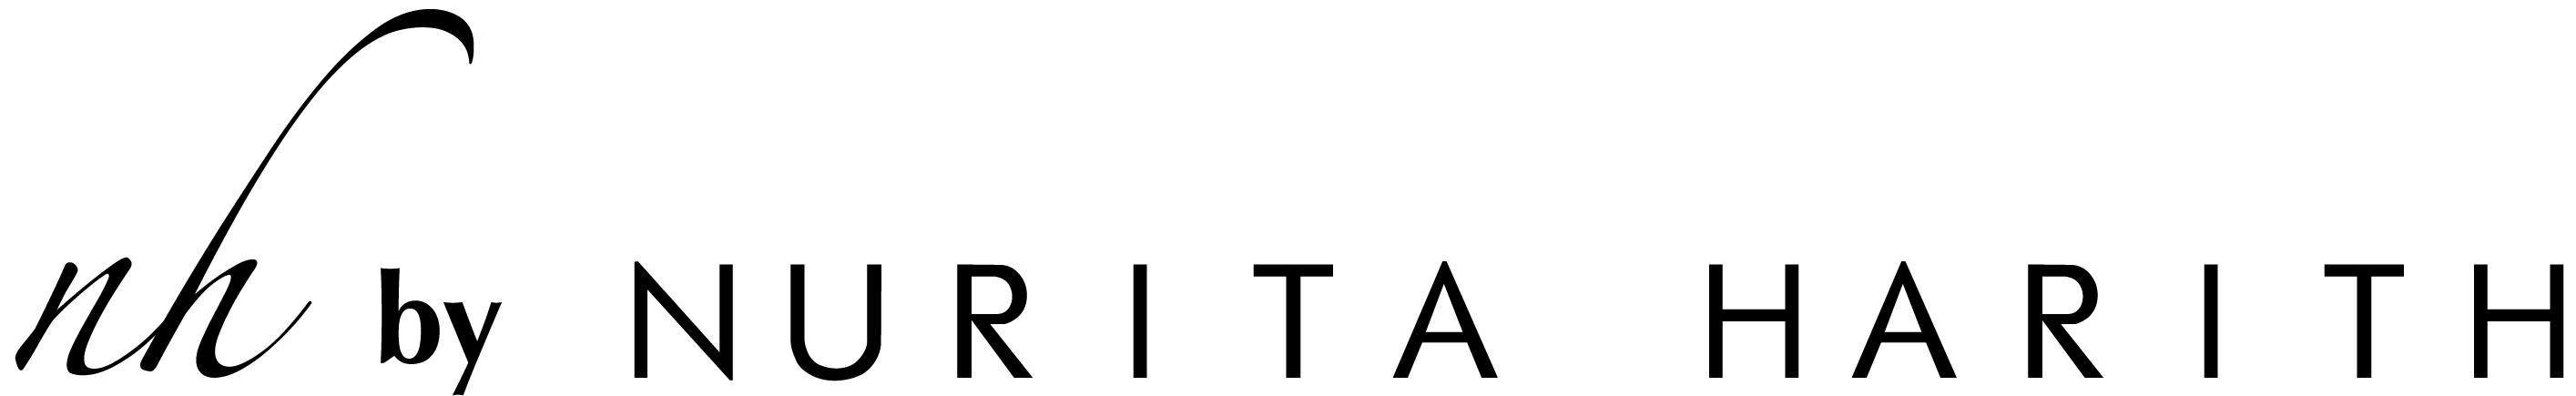 Logo Full Black-01.png